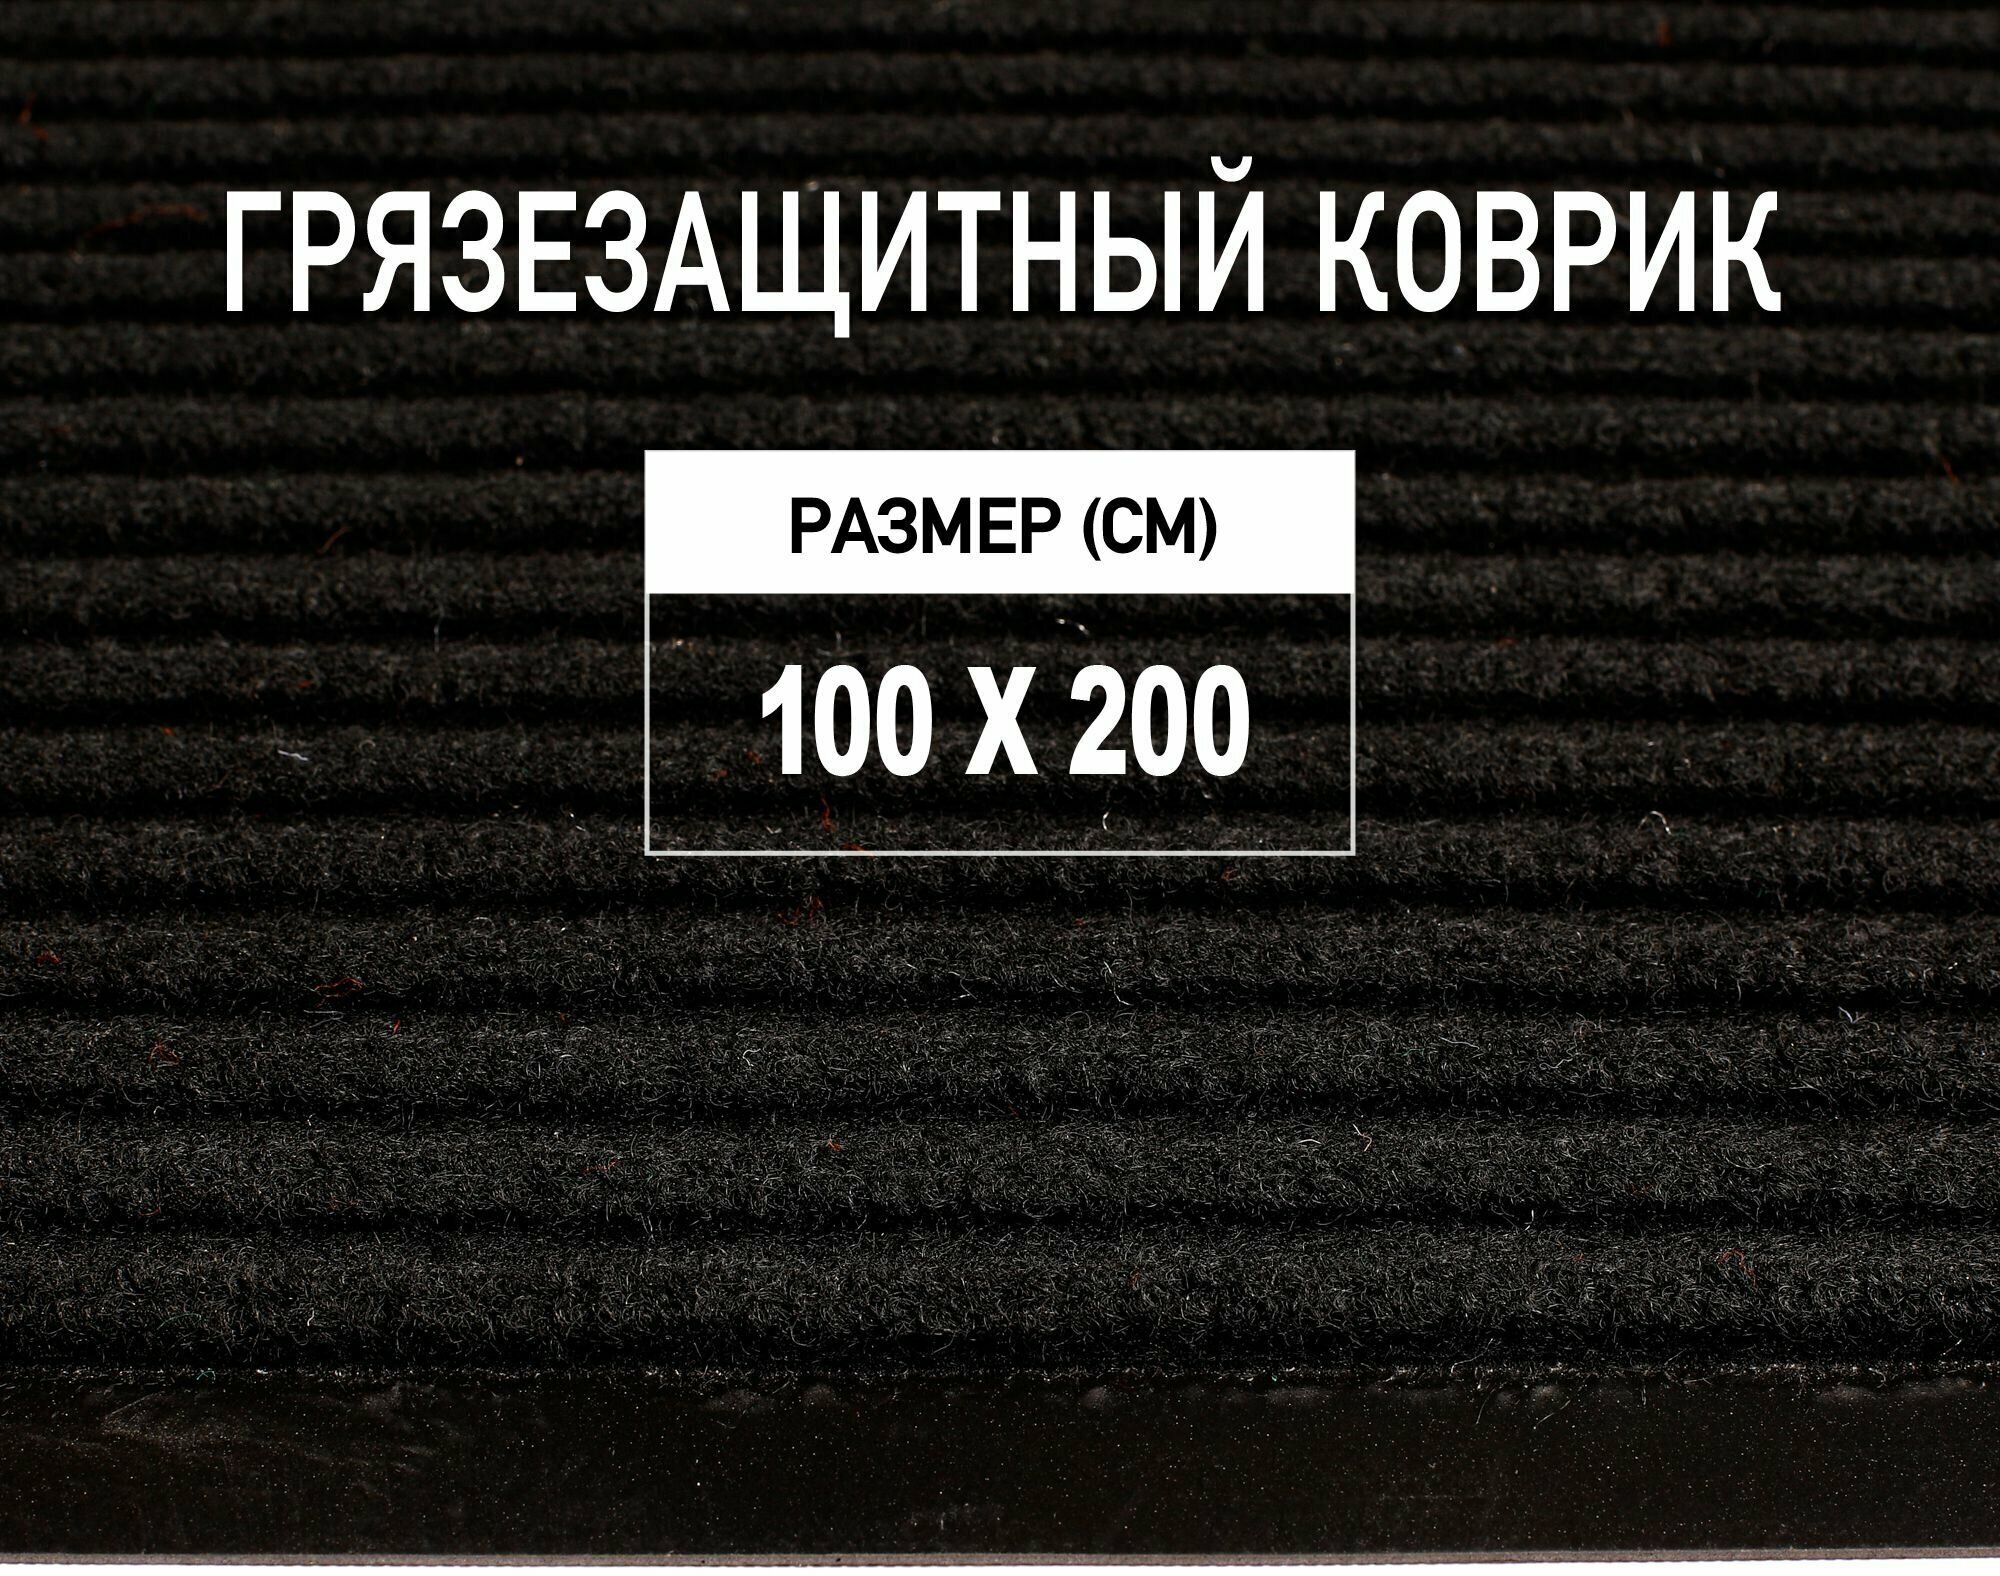 Коврик придверный 100х200 см Premium Grass грязезащитный, черный. Коврик в прихожую. 4821403-100х200